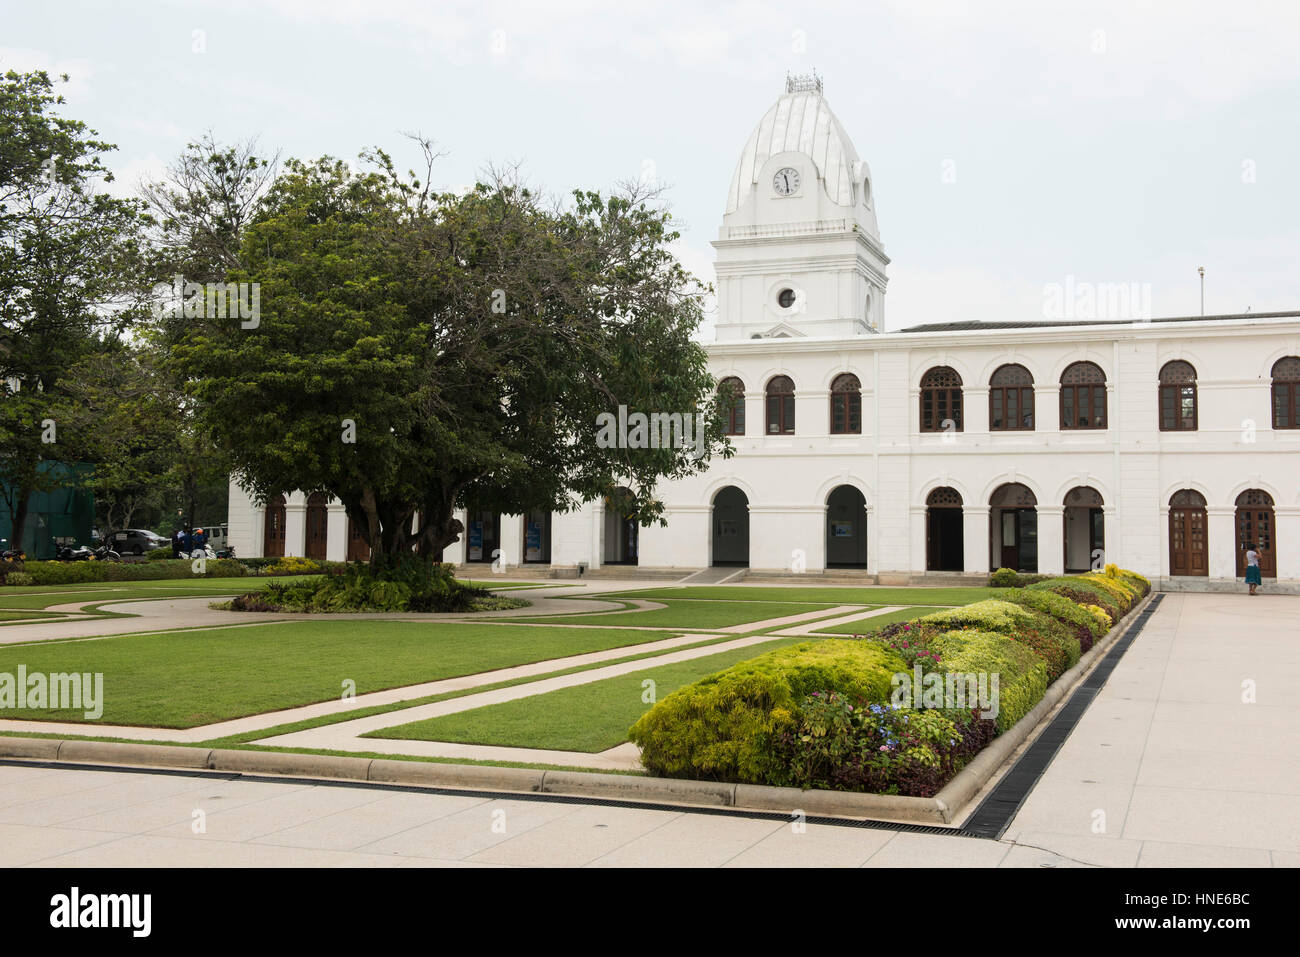 Arcade de l'indépendance, la place de l'indépendance, les jardins de cannelle, Colombo, Sri Lanka Banque D'Images